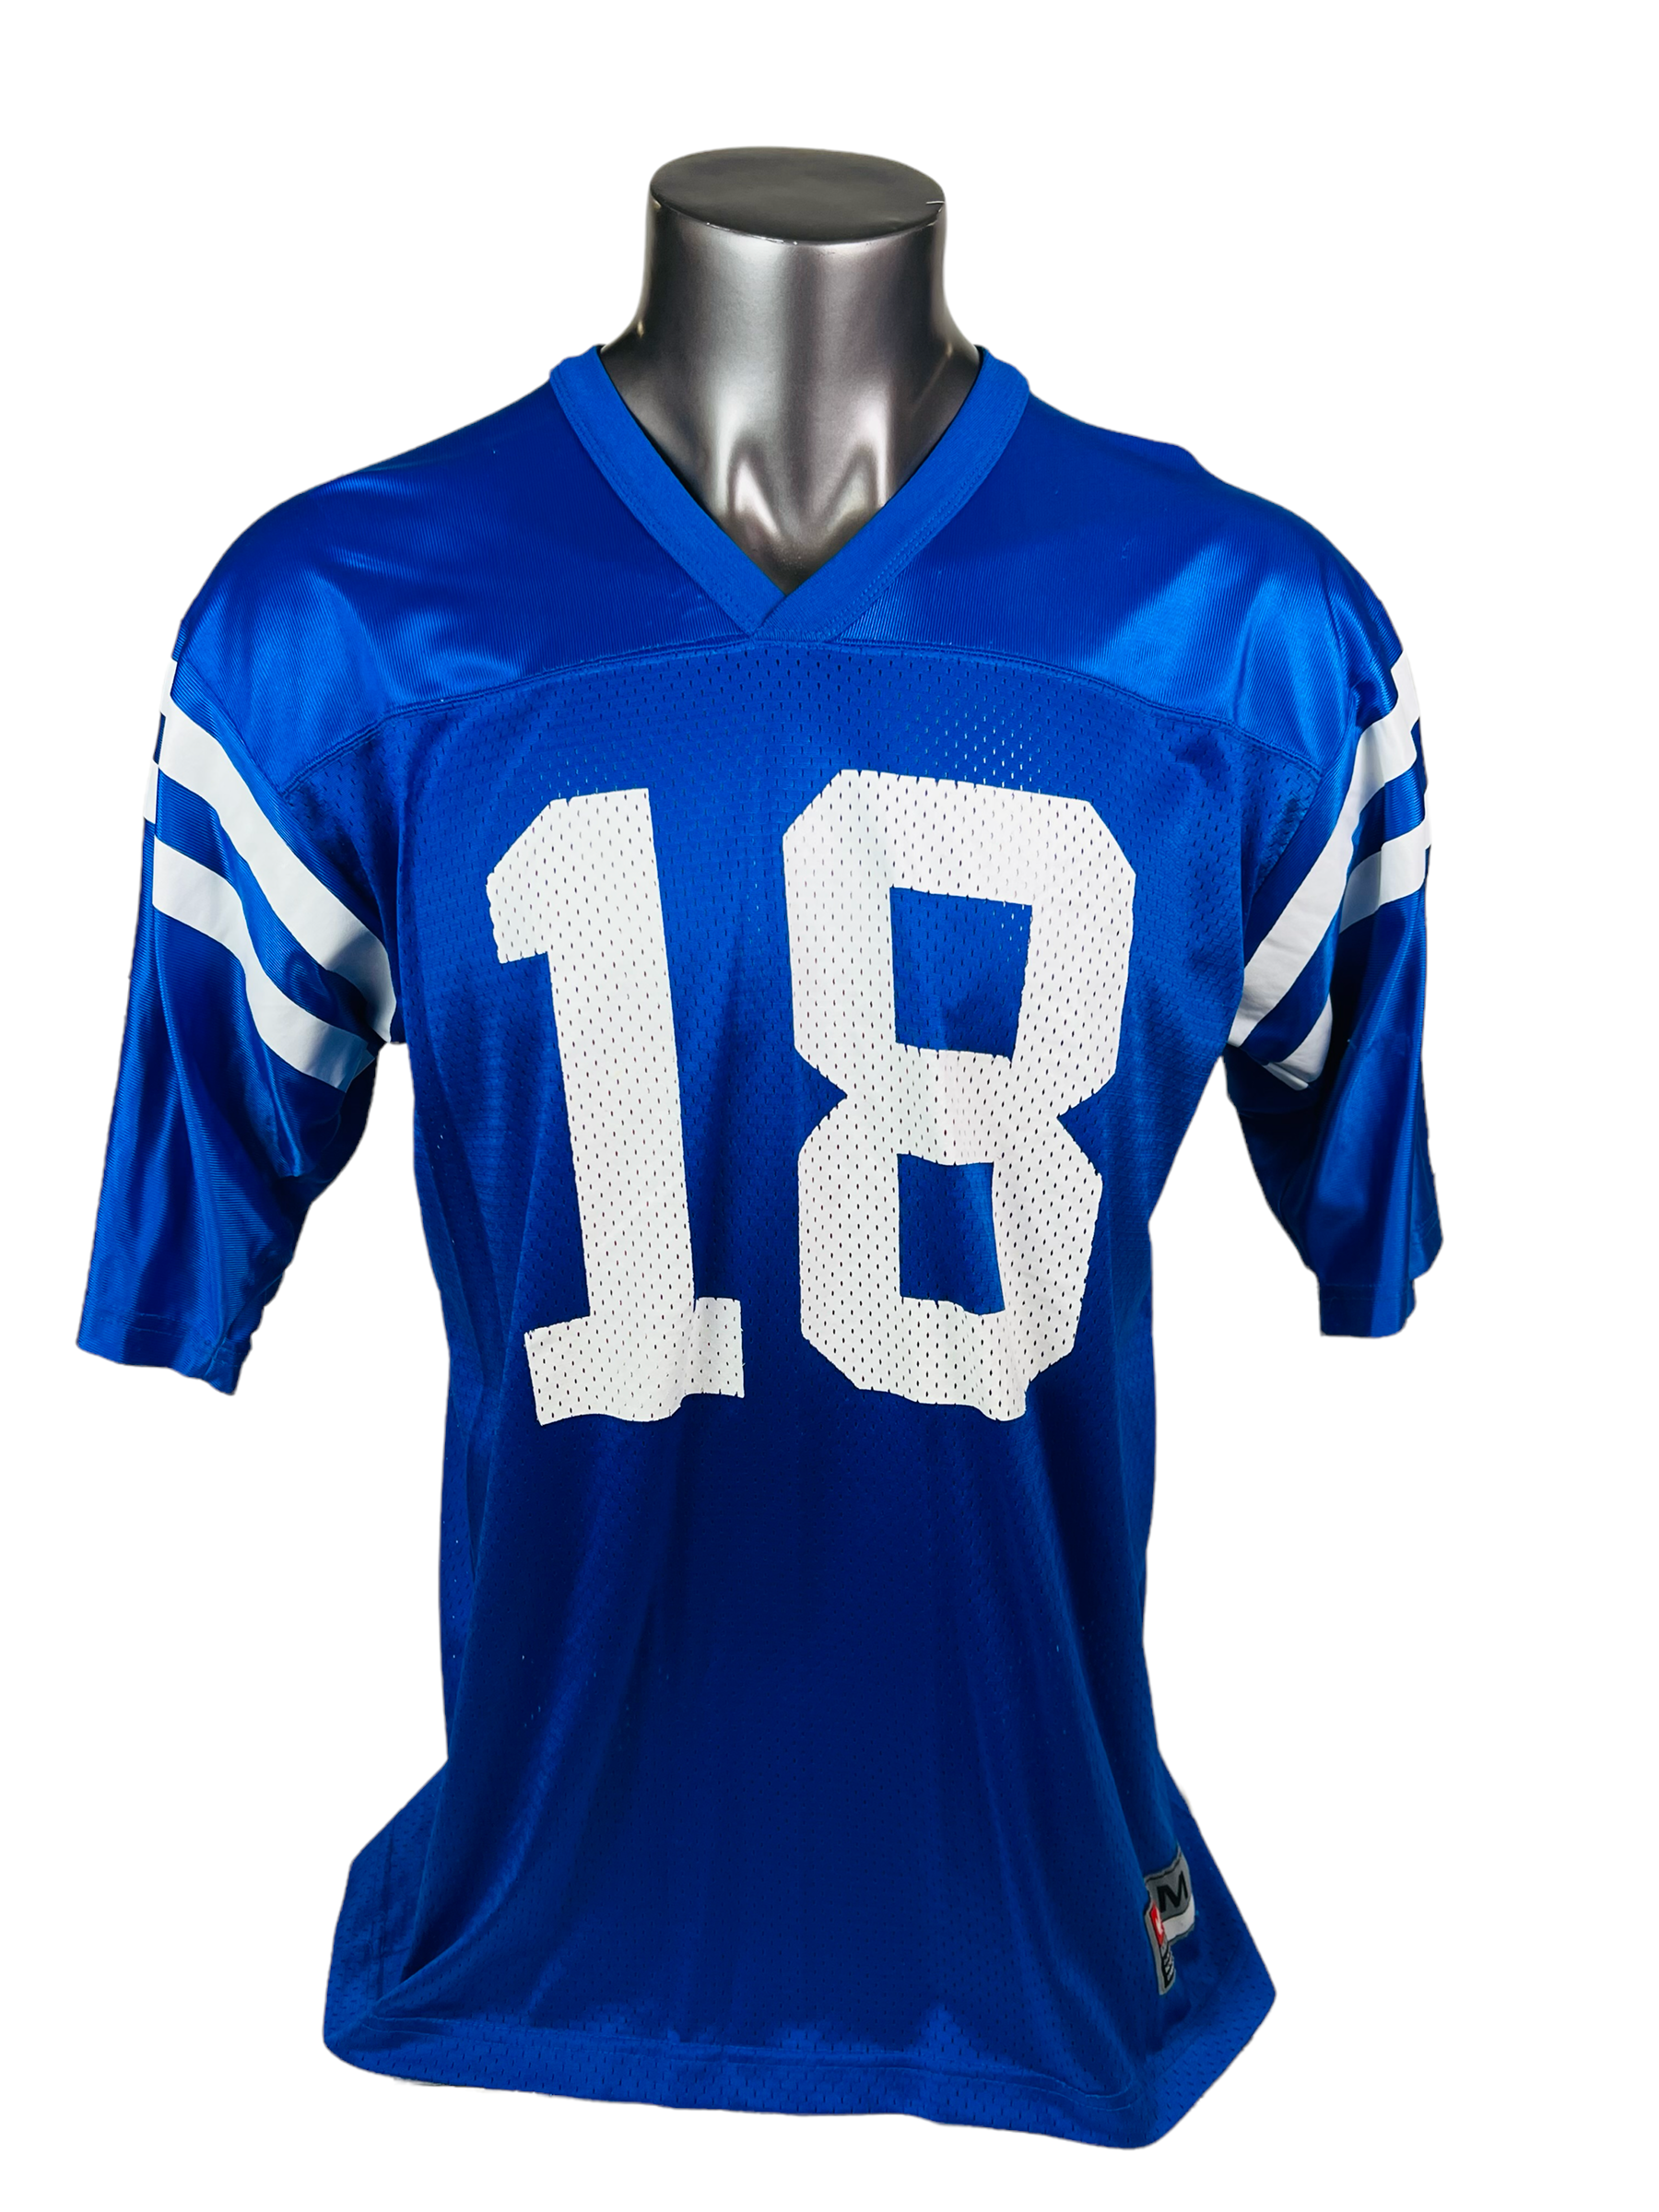 Vintage Indianapolis Colts Peyton Manning 18 Jersey Reebok 